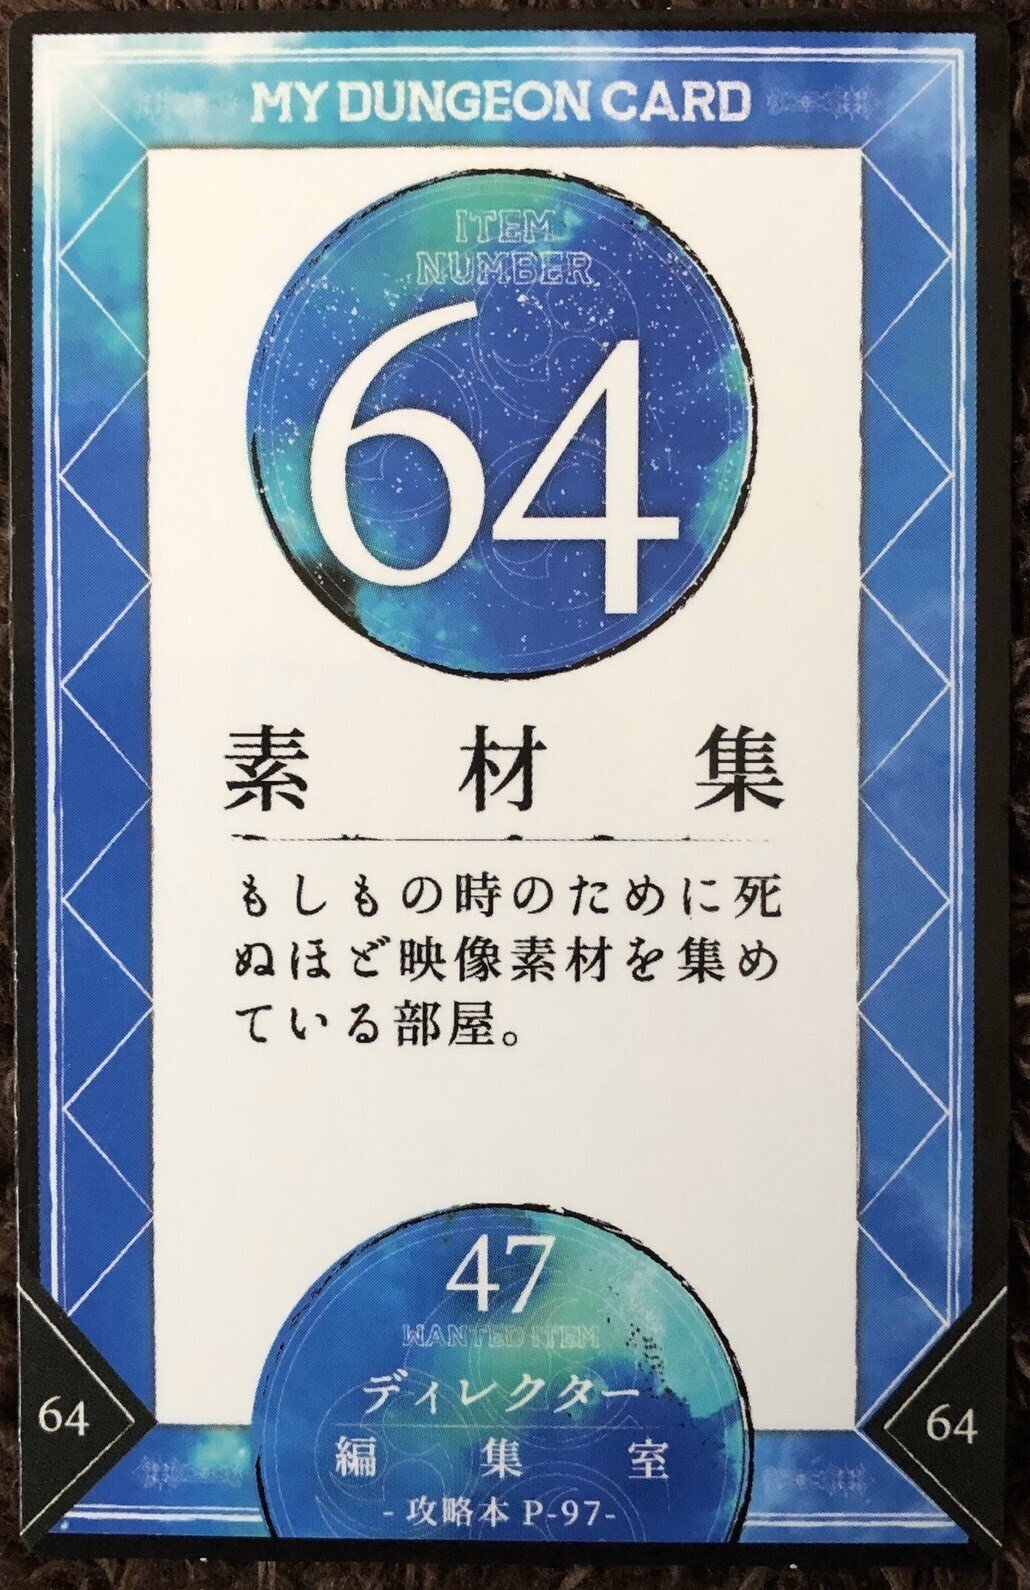 64-47 編集室の使い方｜風見猫 (shota takahashi)｜note